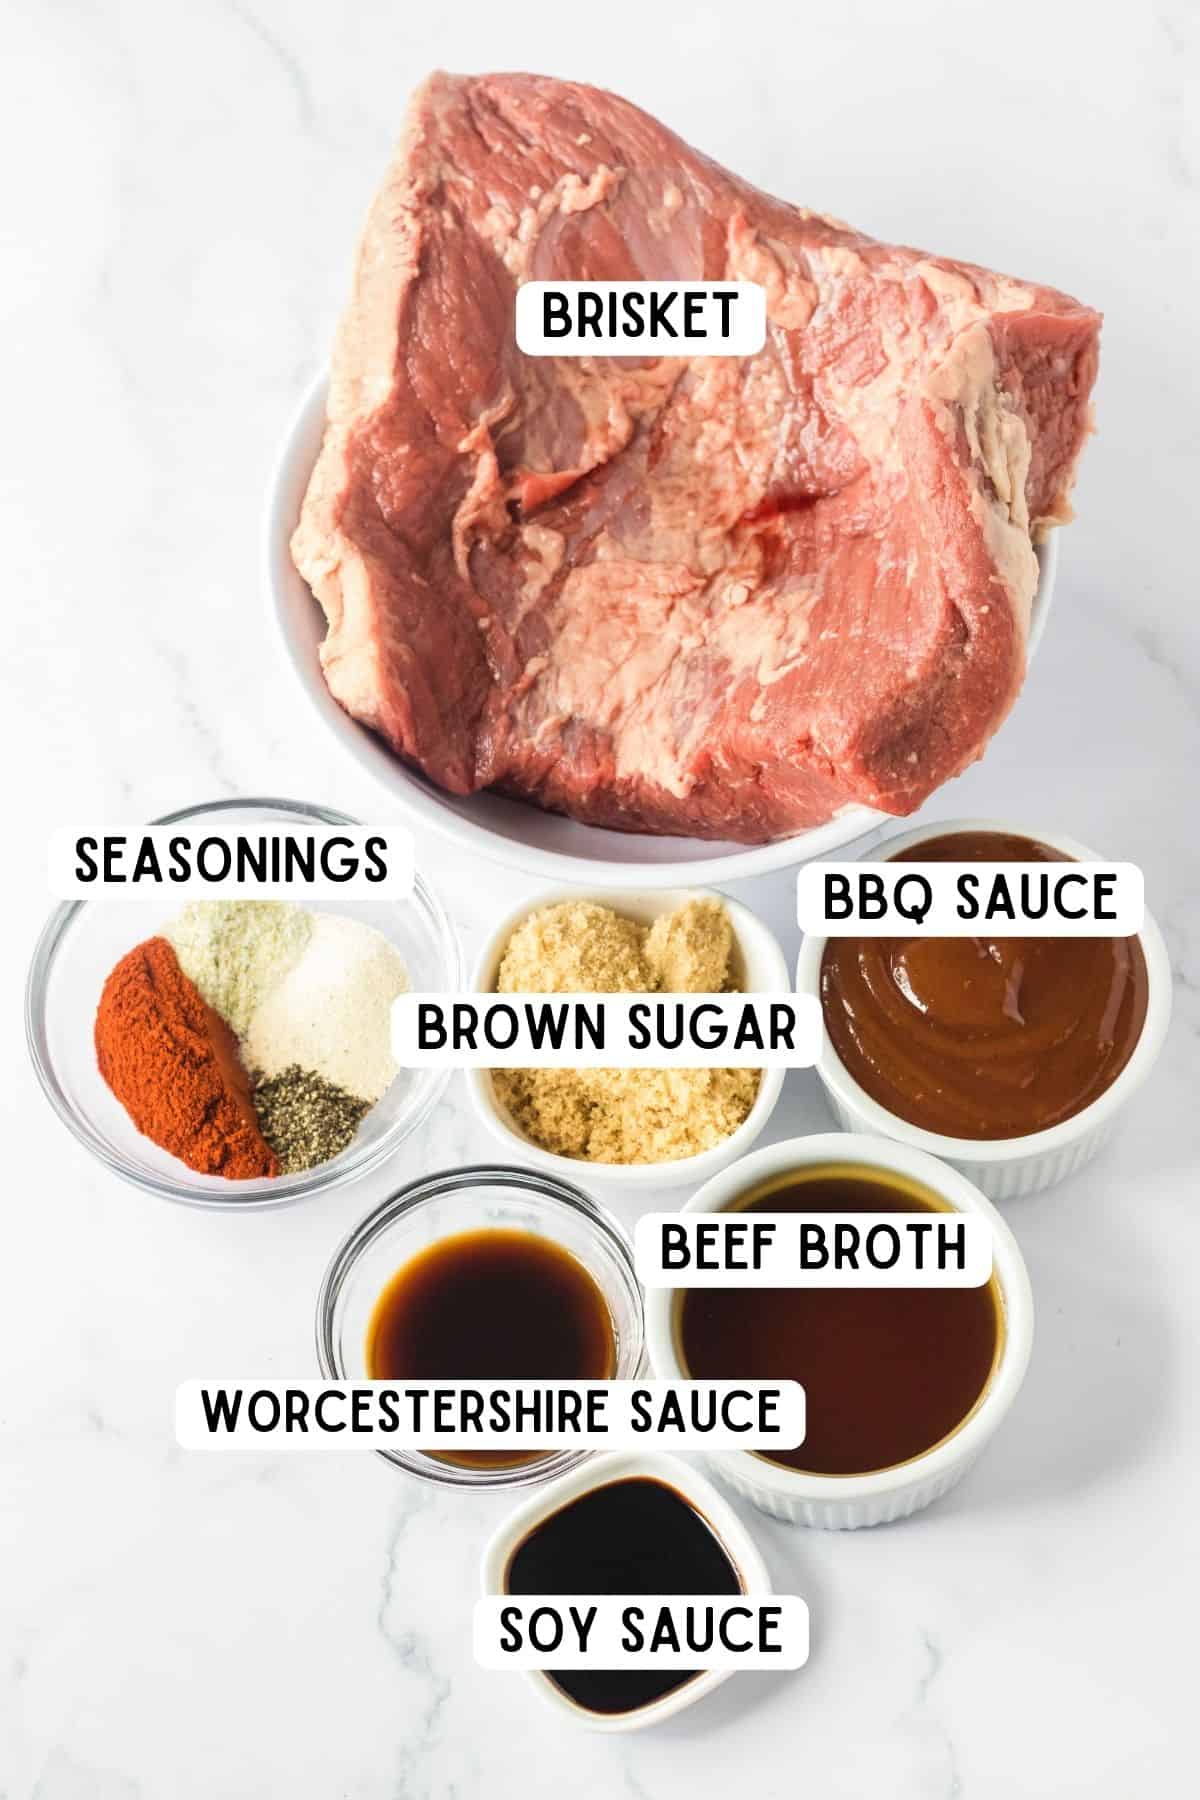 Beef brisket, soy sauce, bbq sauce, beef broth, worcestershire sauce, brown sugar and seasonings.